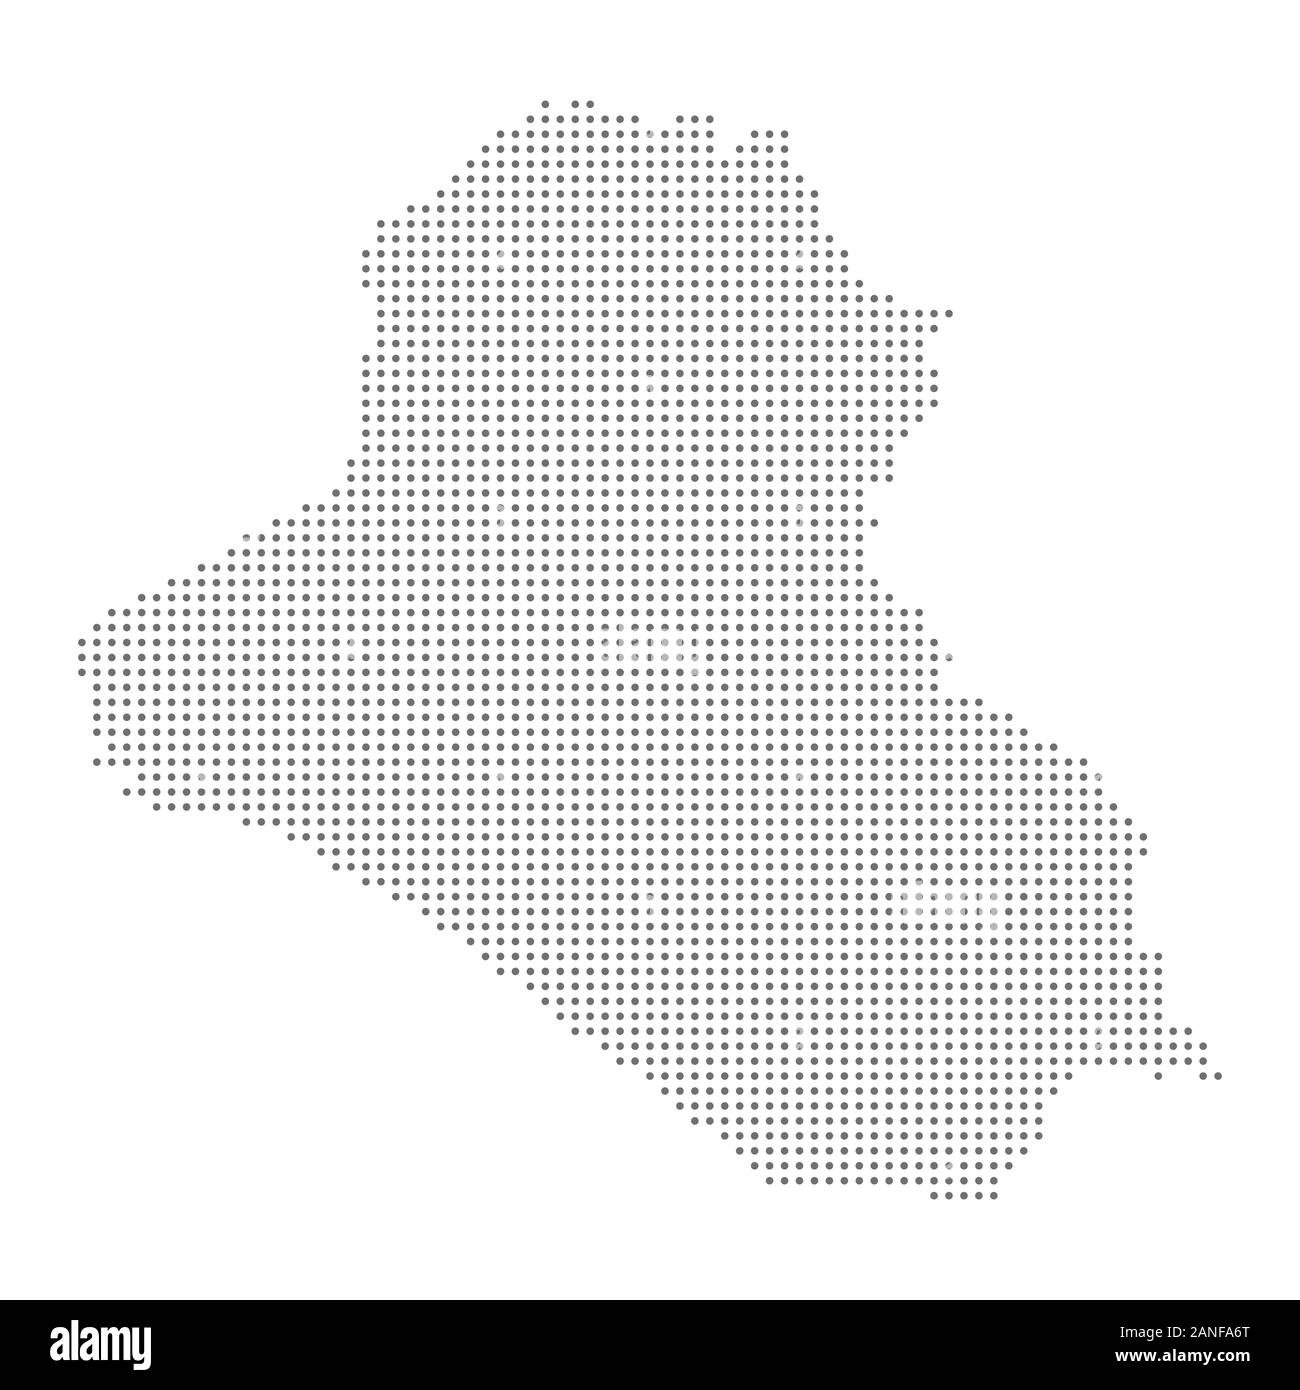 Mapa de Iraq ilustración vectorial con puntos. Diseño Web, papel tapiz, volantes, carteles, folletos, material de archivo banners Ilustración del Vector